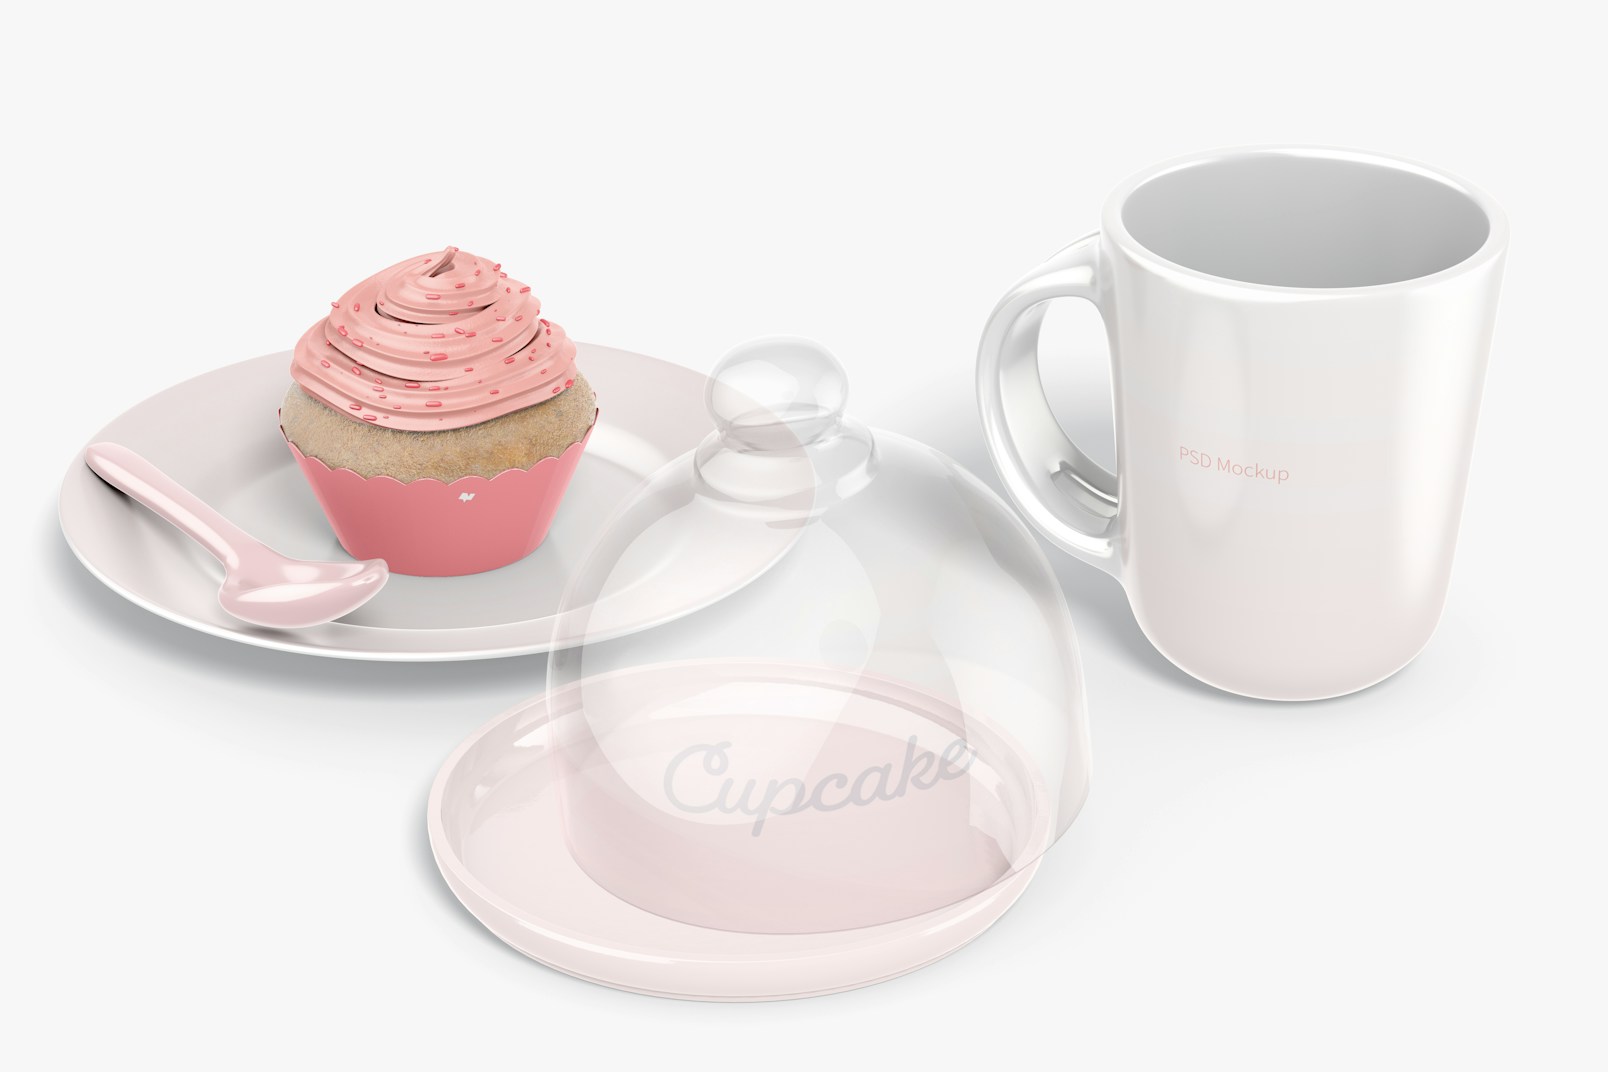 Cupcake Stand with Dome Lid with Mug Mockup